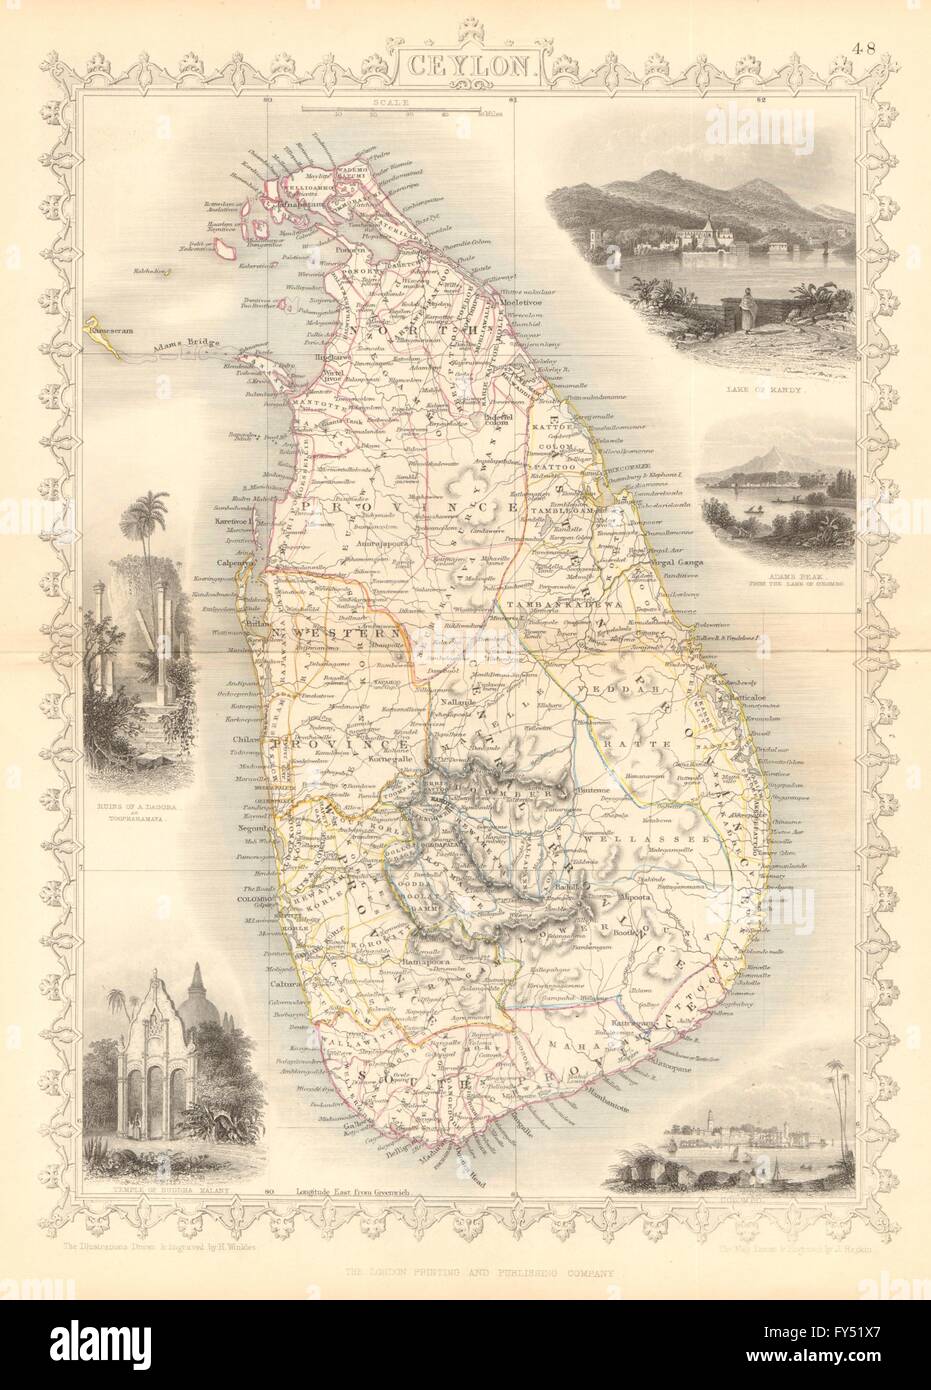 Ceylan. dans les provinces. Kandy et Colombo. Le Sri Lanka. TALLIS/RAPKIN, 1849 map Banque D'Images